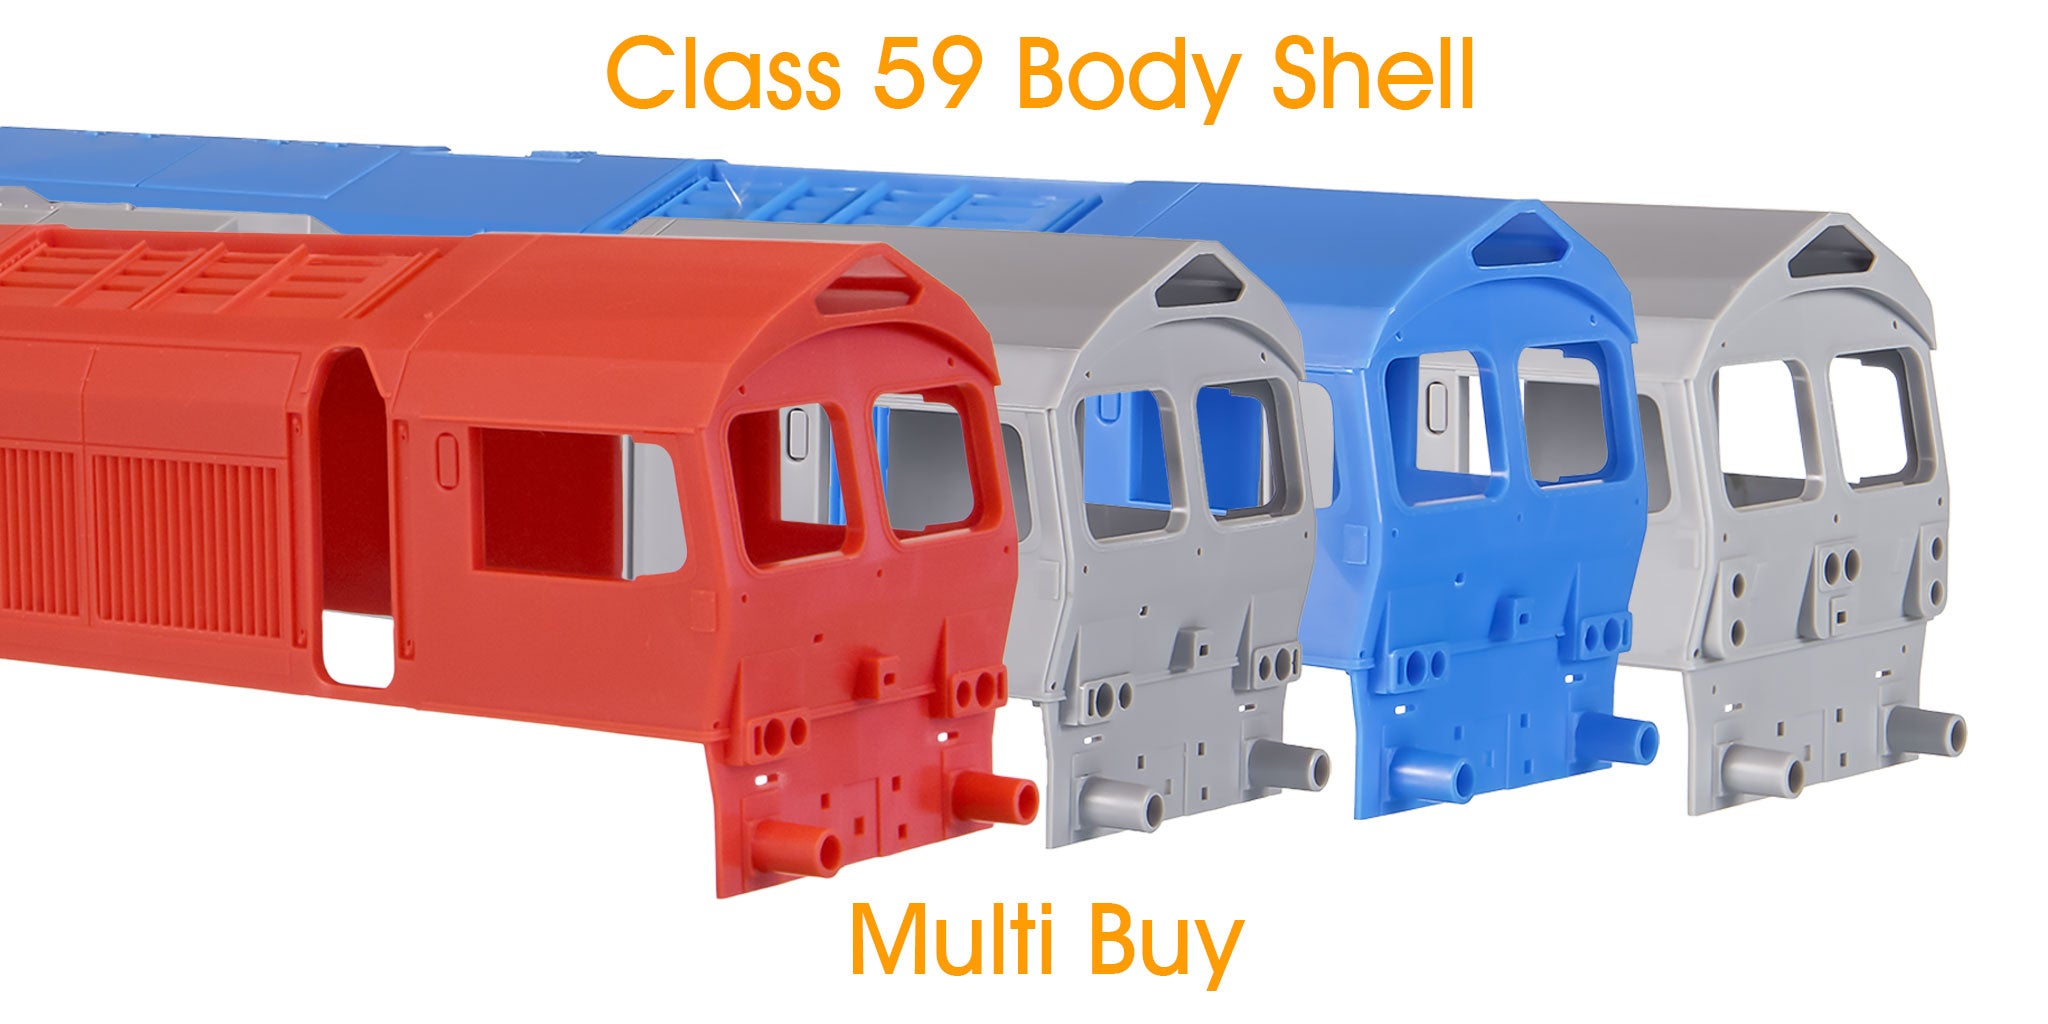 4D-005-REJBDYSHELL-D OO Gauge Class 59 Reject Body Shell Multi Buy